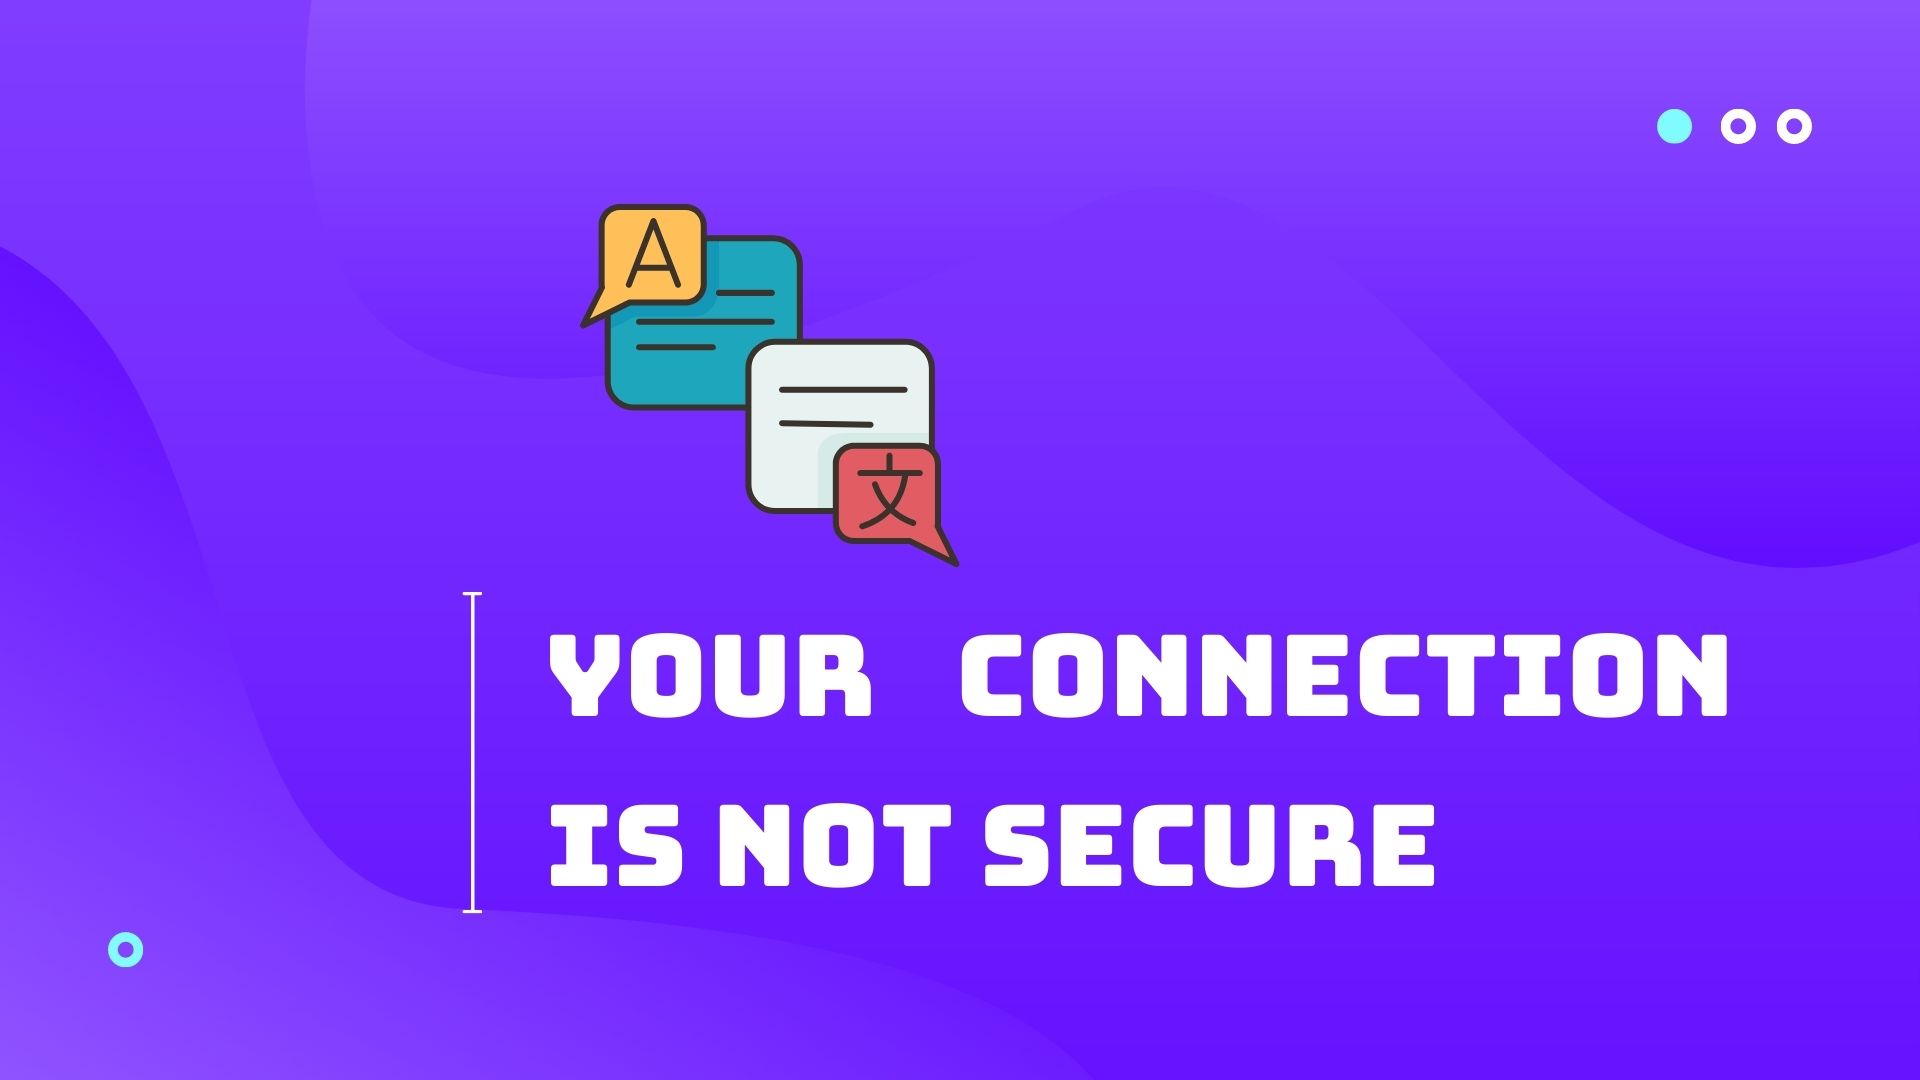 Tìm hiểu về lỗi “Your connection is not secure”